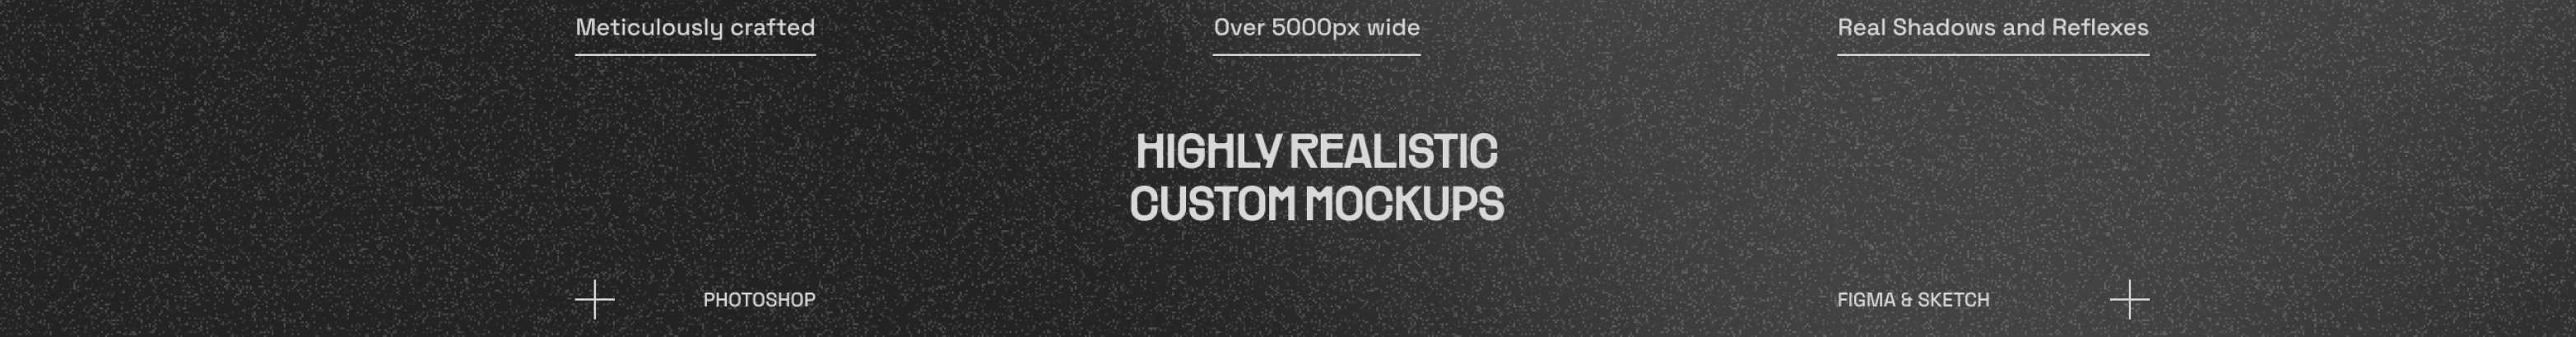 360 Mockups's profile banner